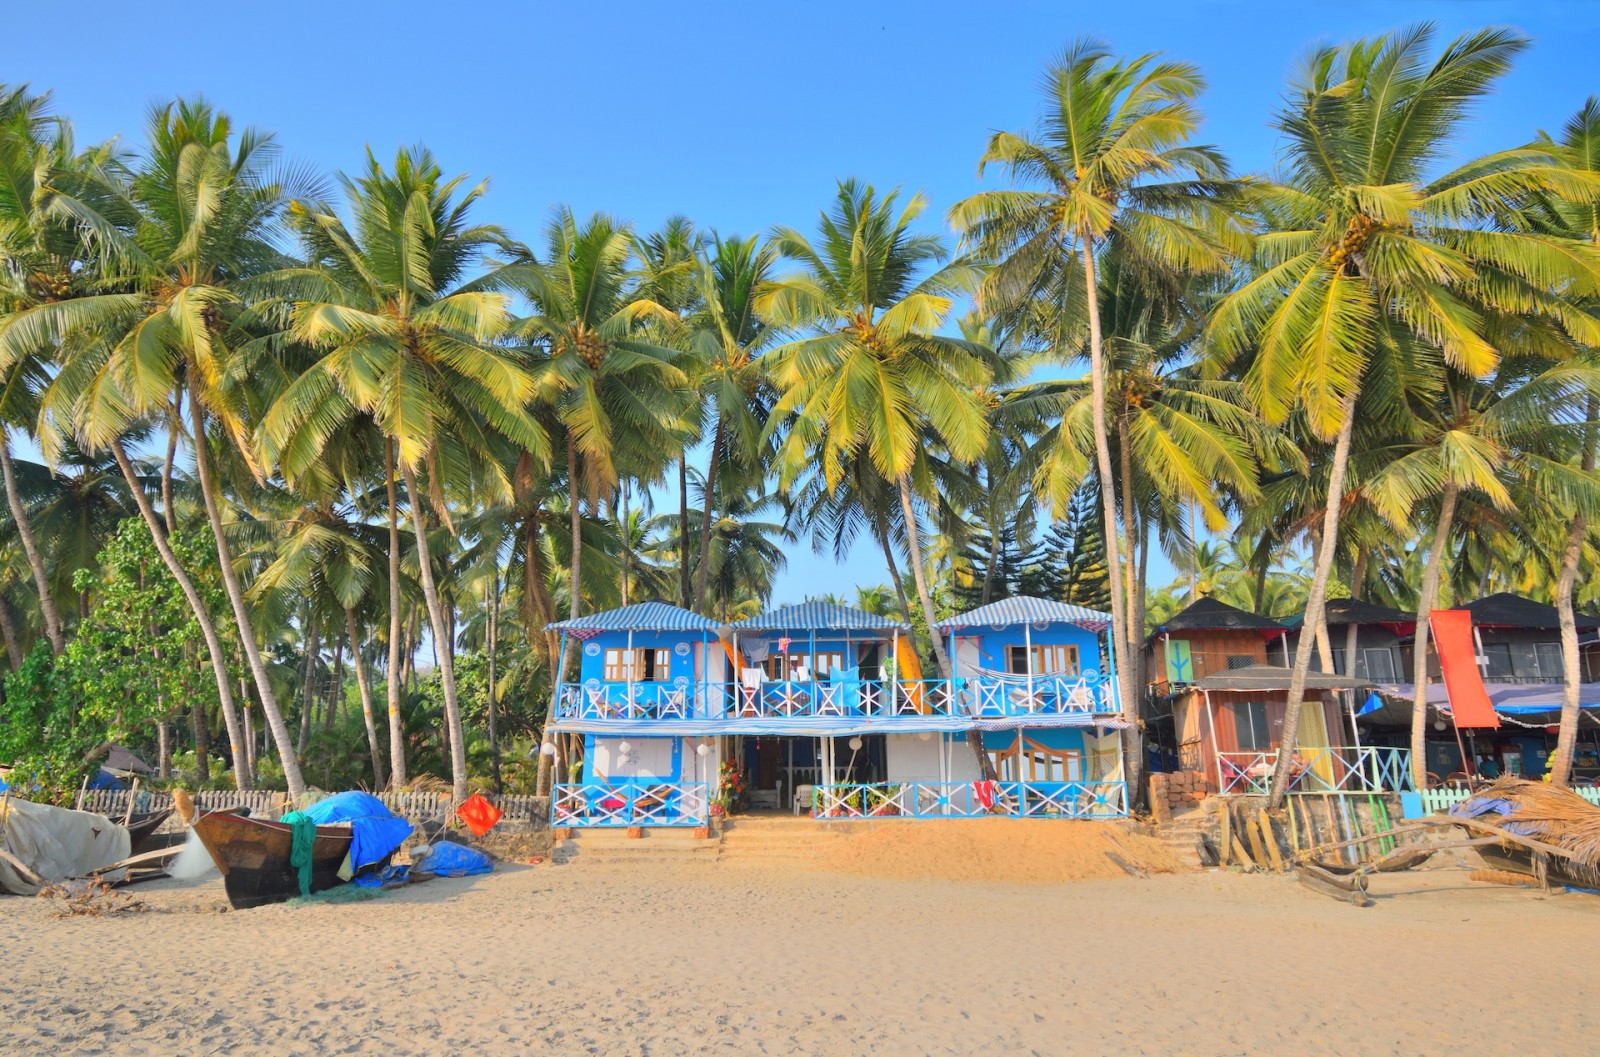 Coloridas cabañas de playa en la playa de Palolem, Goa